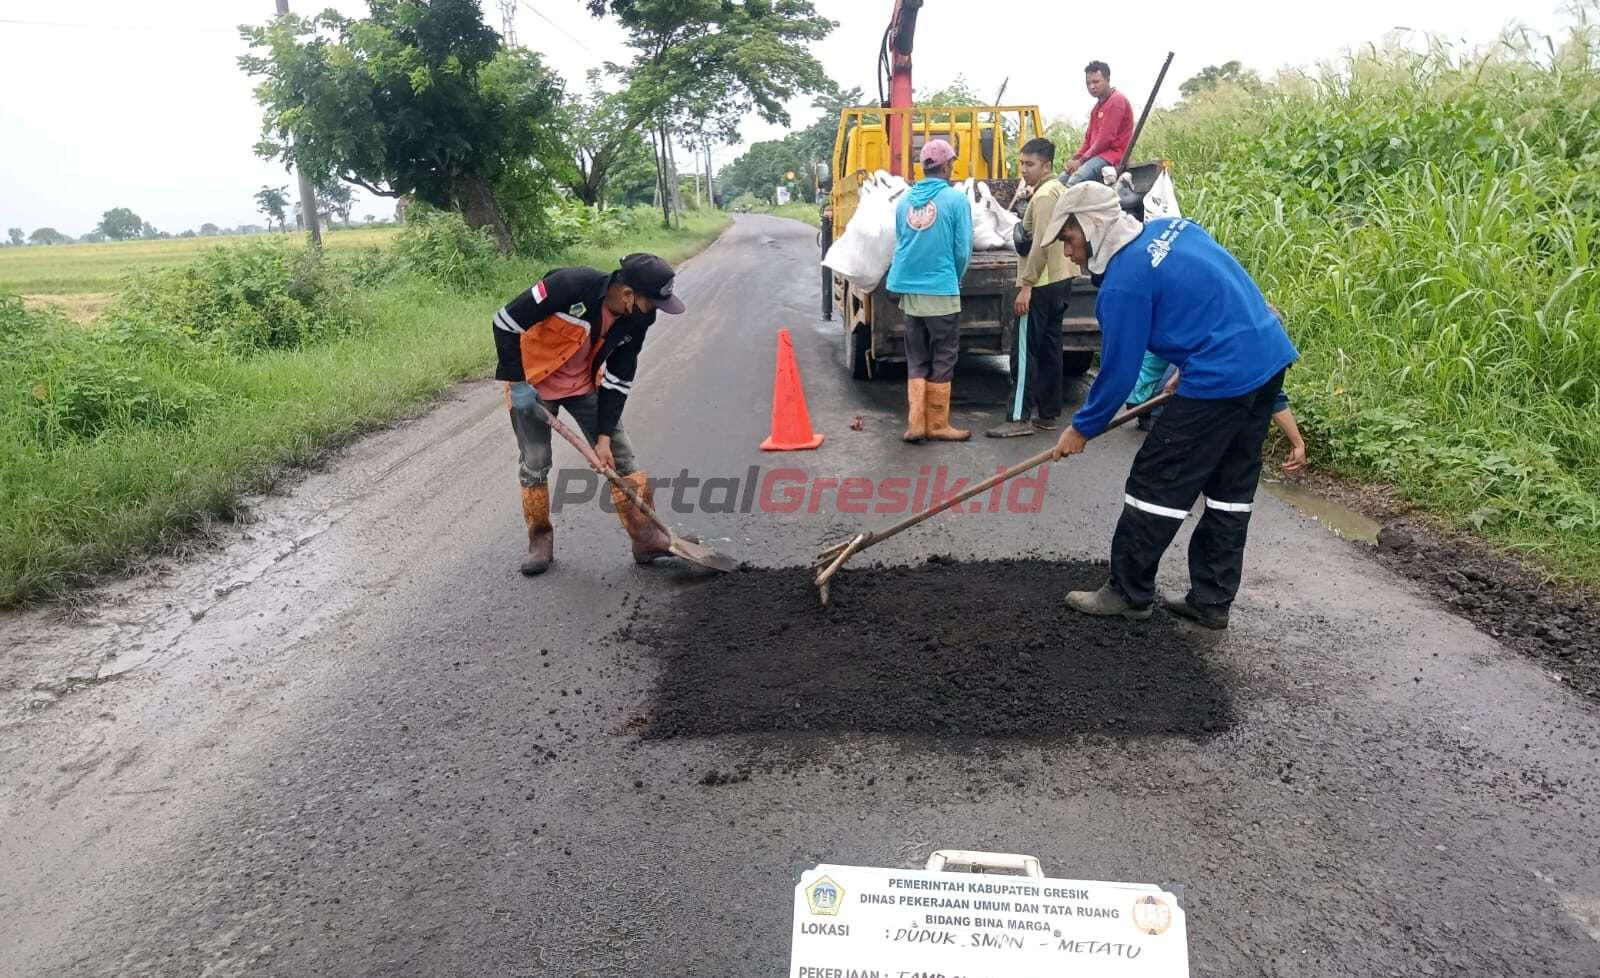 Dinas Pekerjaan Umum dan Tata Ruang (PUTR) Kabupaten Gresik saat melakukan perbaikan jalan.